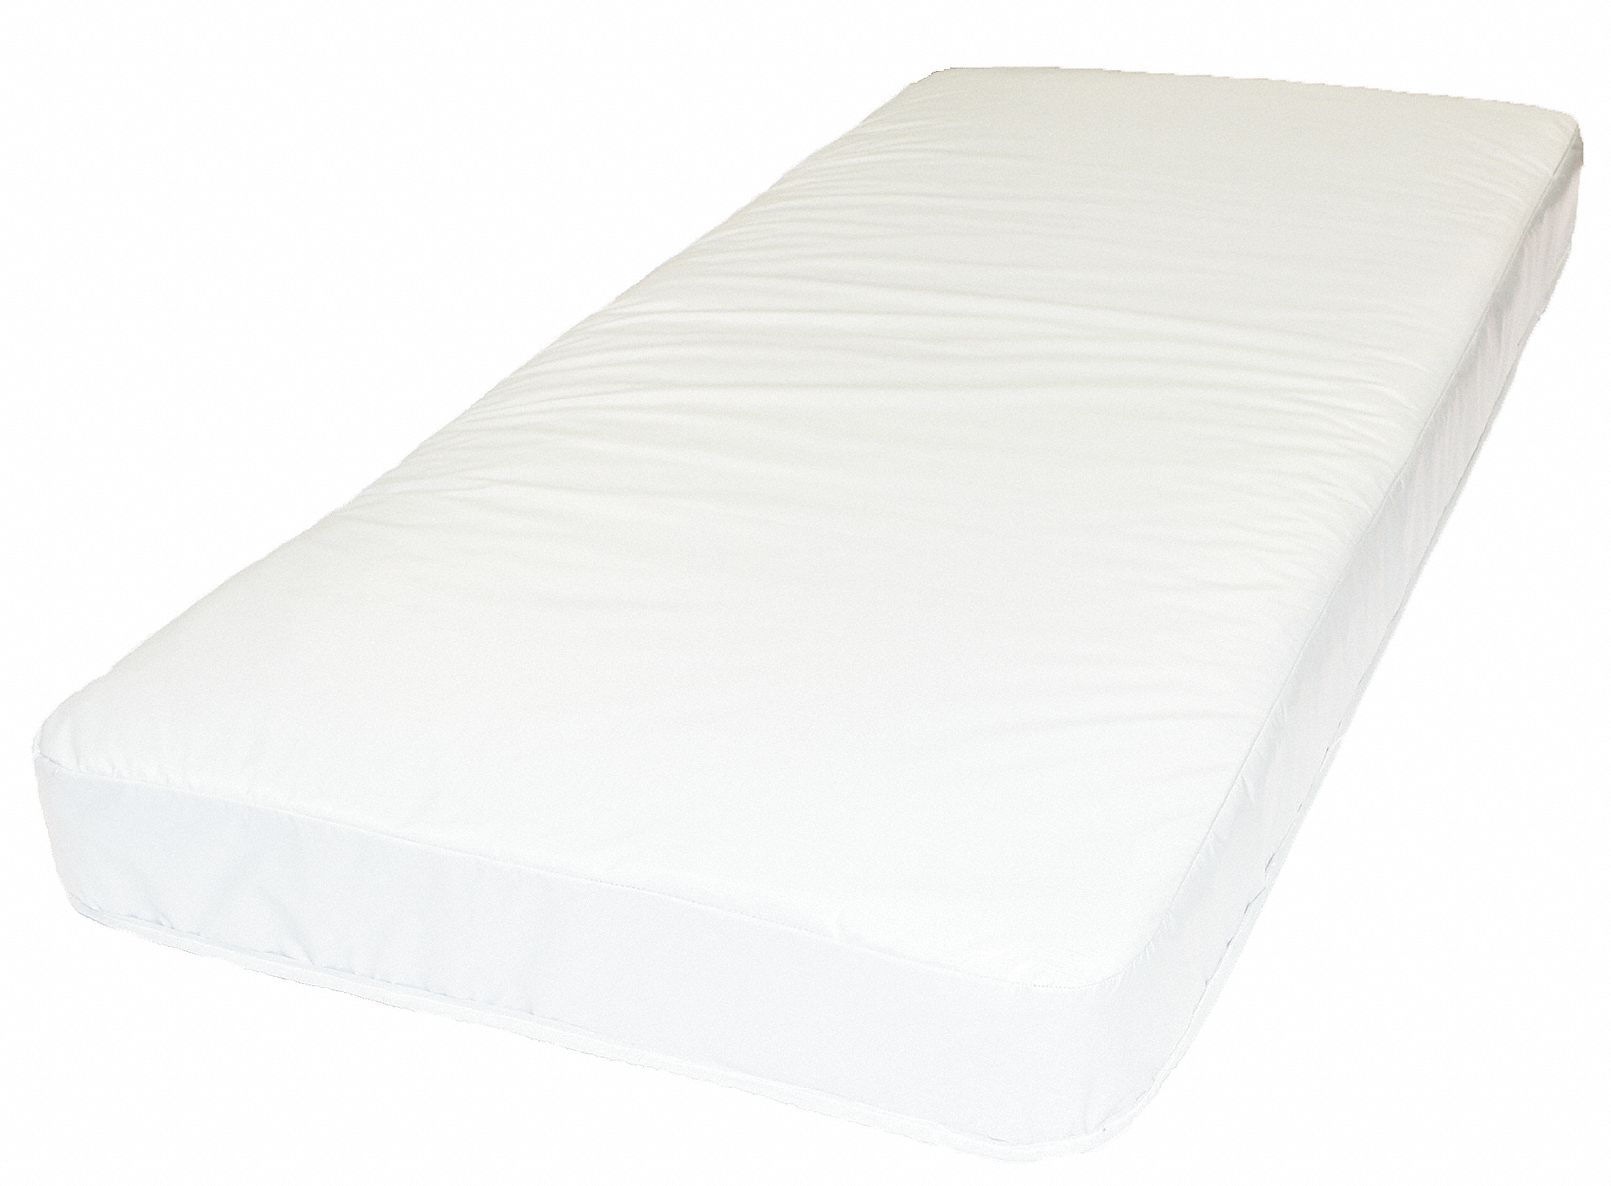 64 inch long mattress